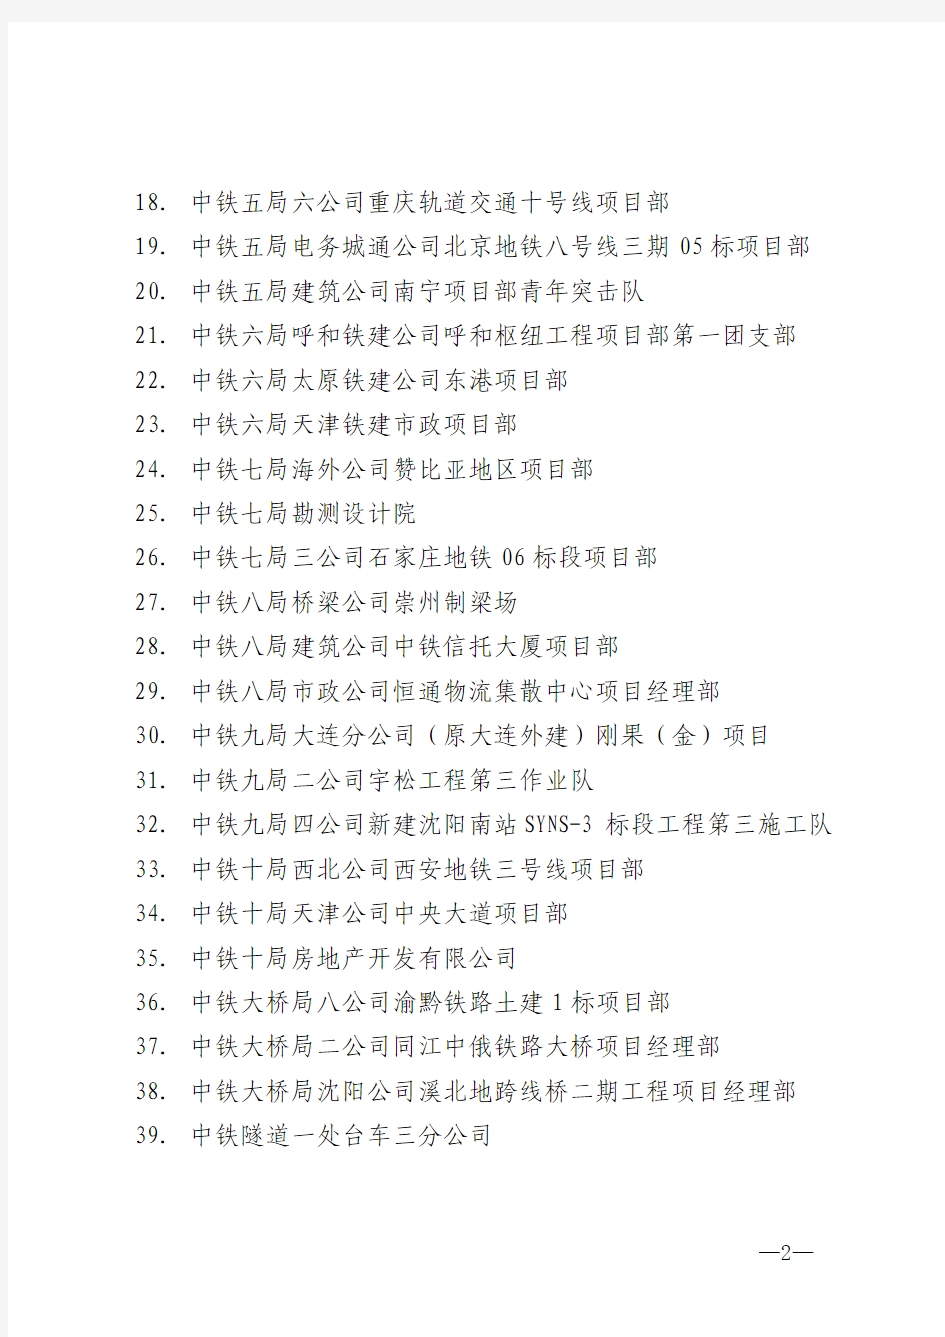 2014年度“中国中铁青年文明号”名单